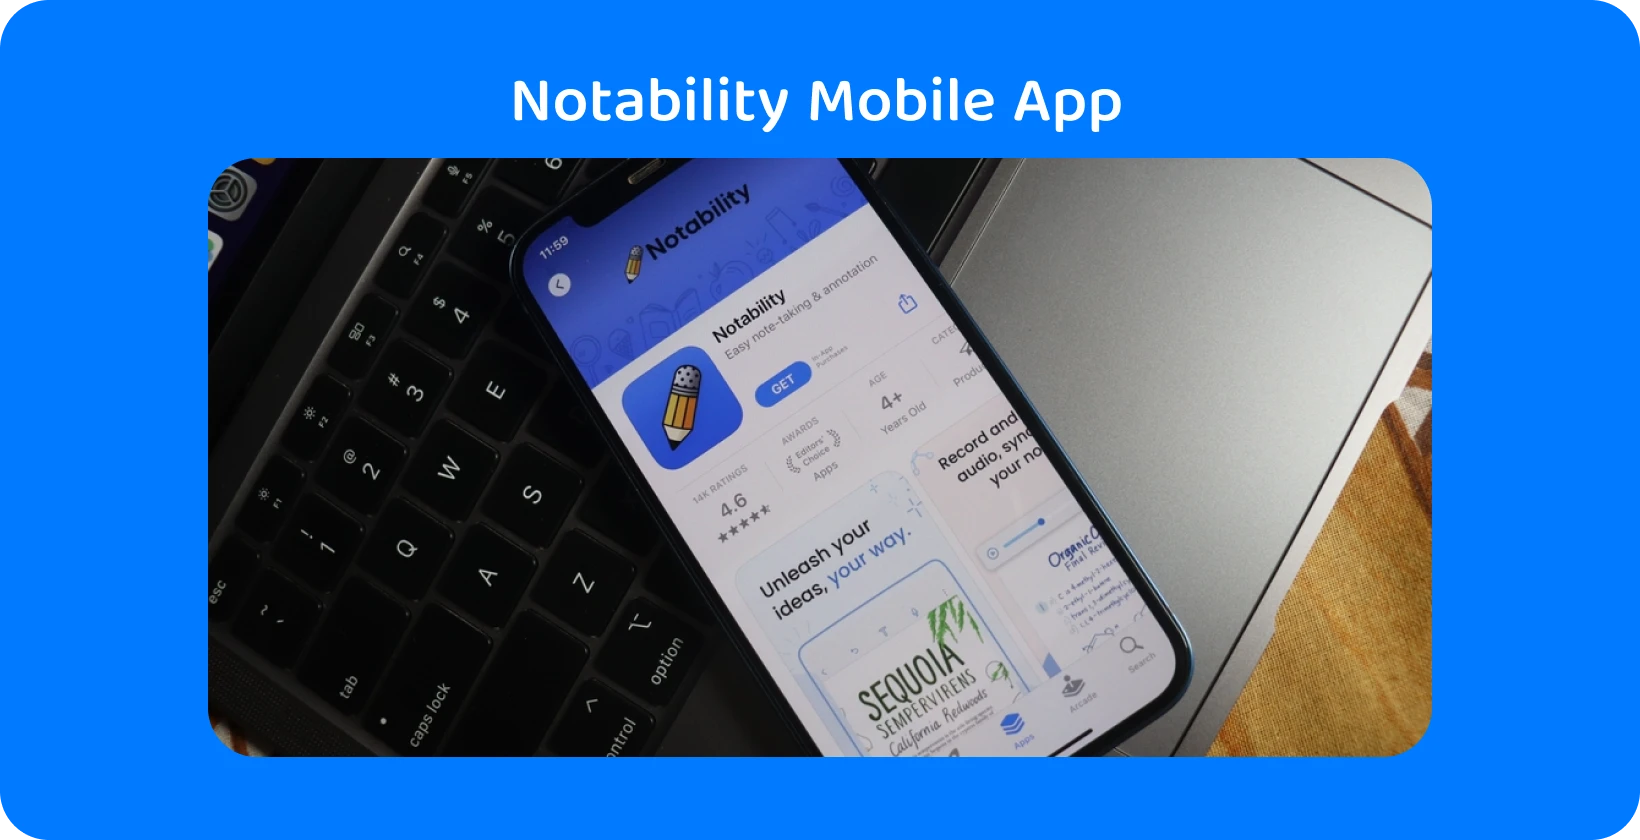 Notability aplikaci na obrazovce smartphonu s funkcí přepisu, která předvádí možnosti převodu zvuku na text.